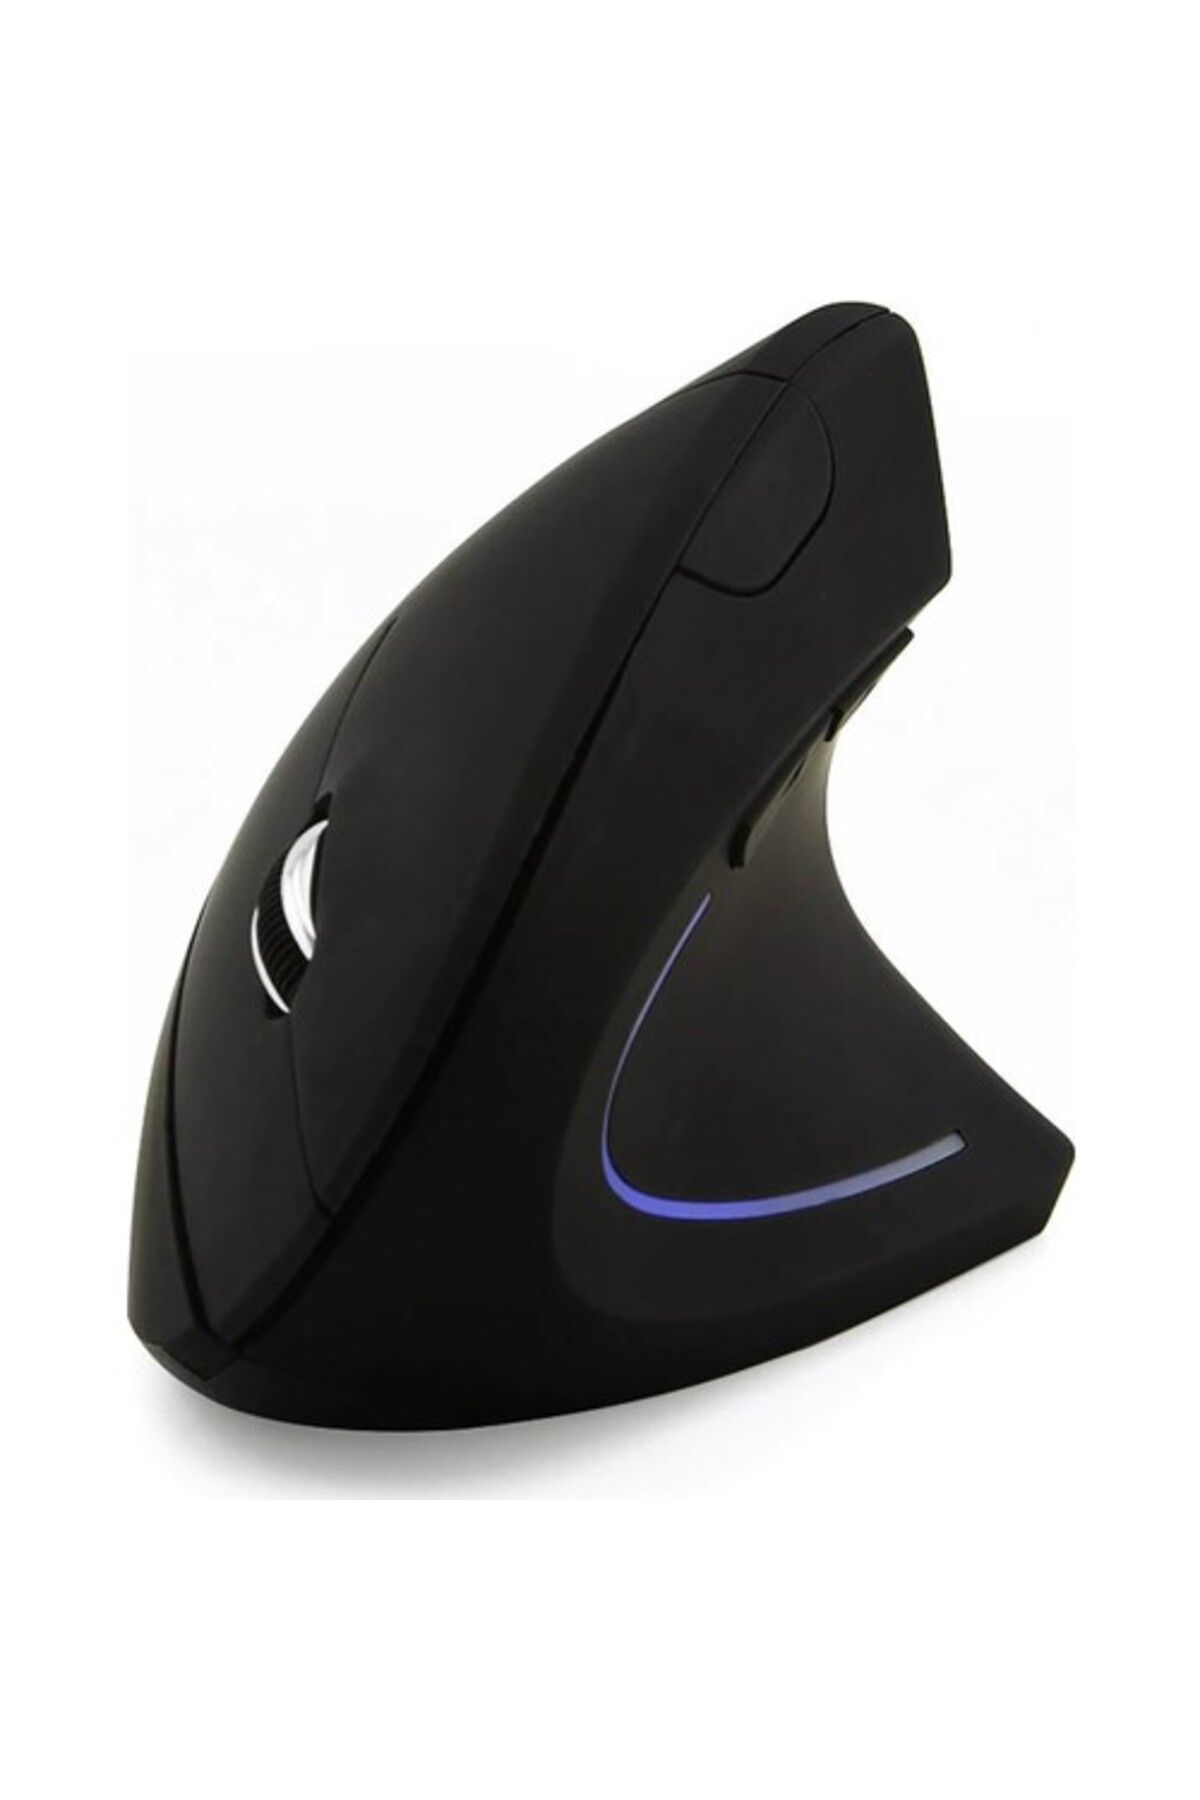 Techmaster Dikey Optik Ergonomik Mouse Fare Kablosuz Bilek Korumalı Gaming